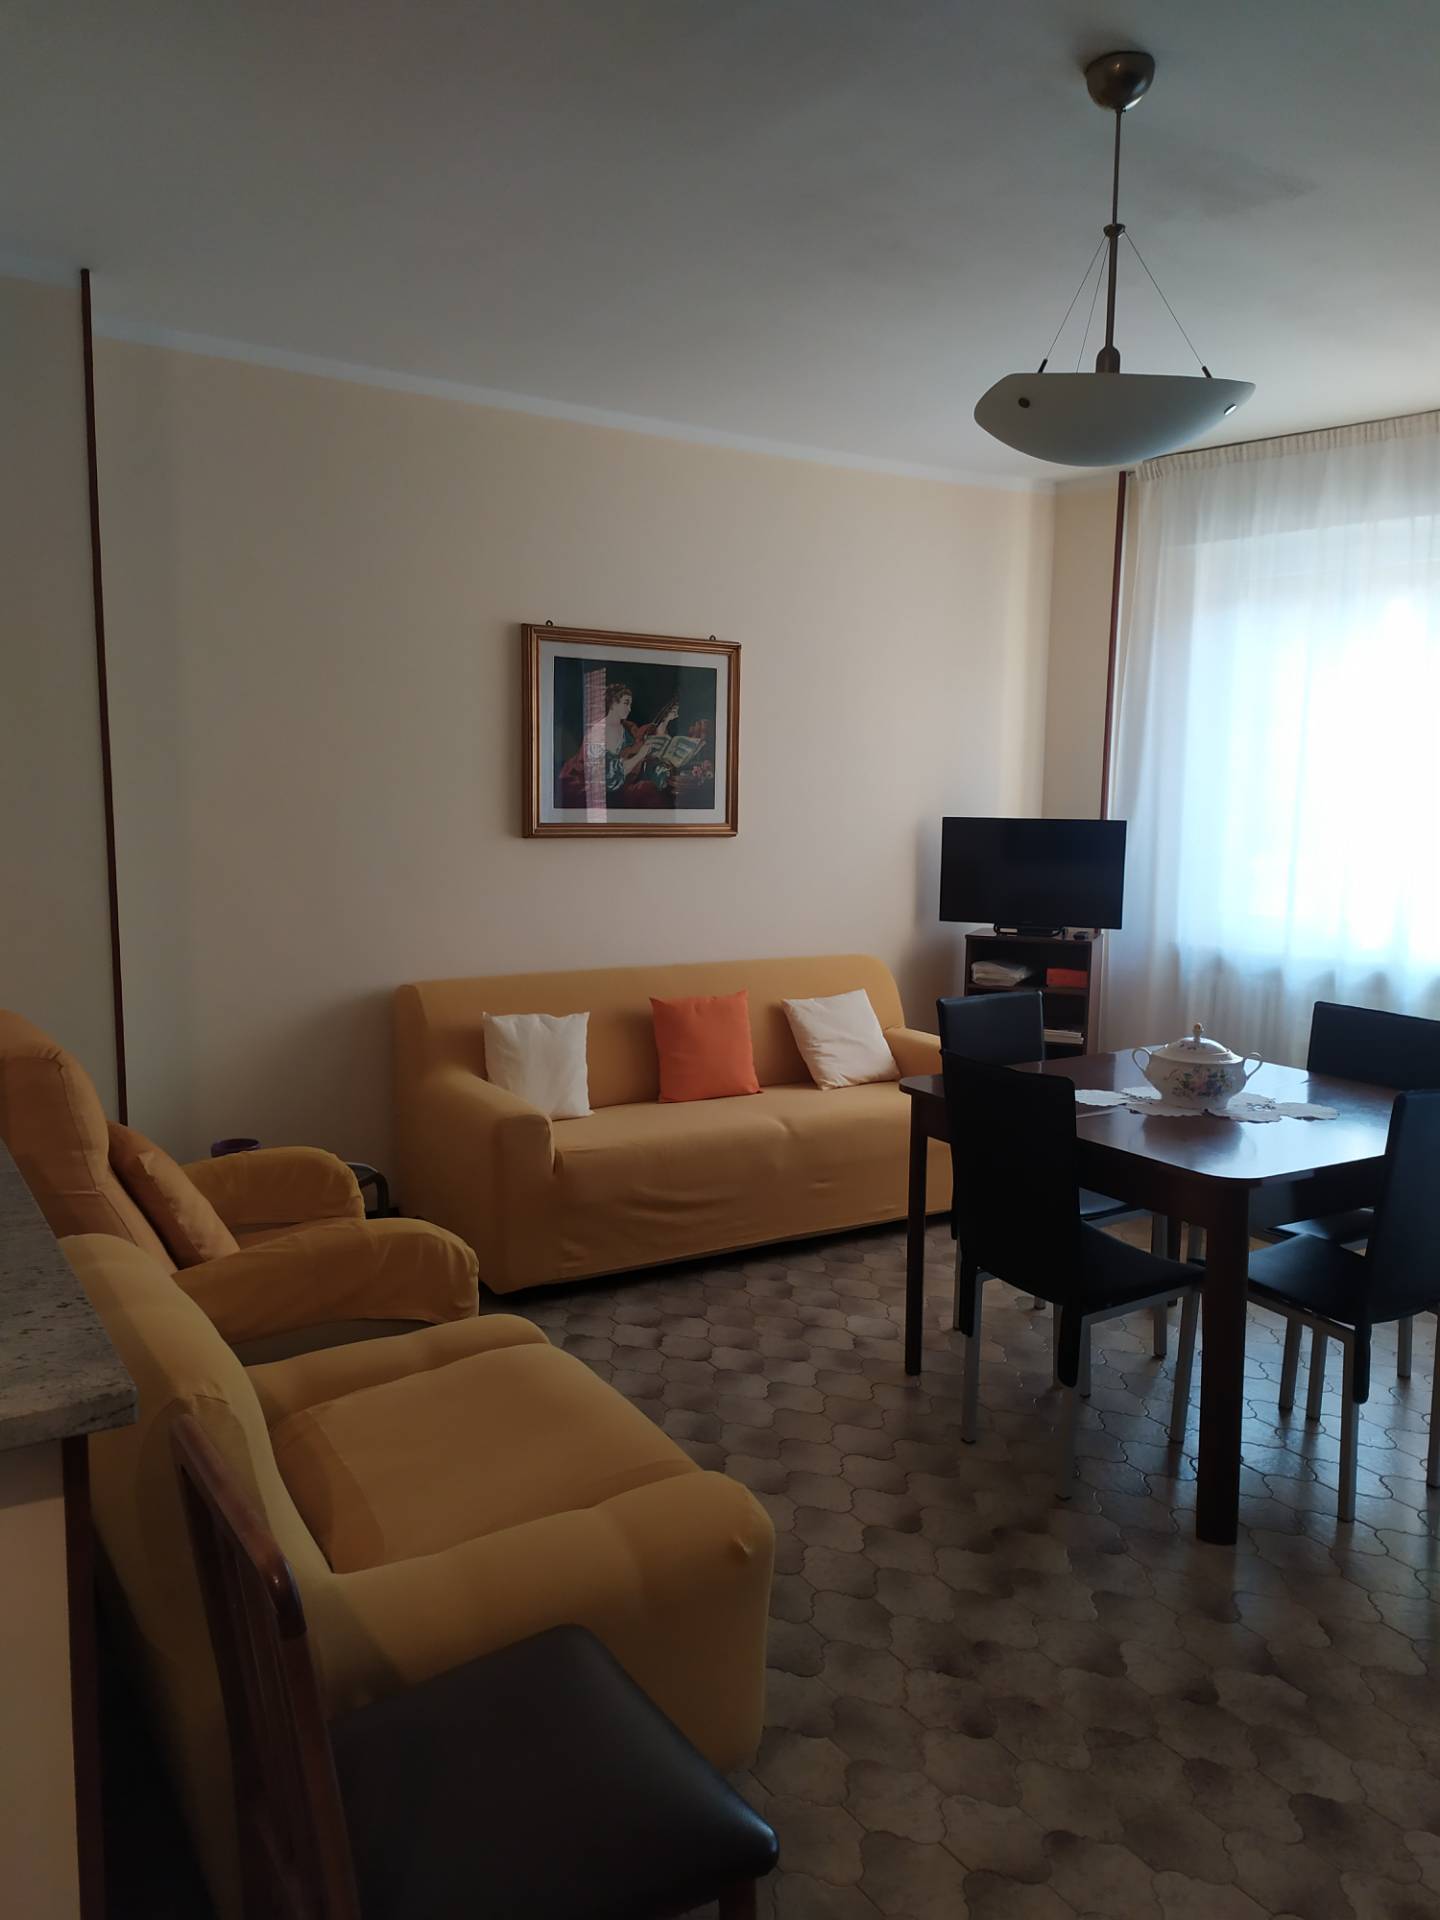 Appartamento in affitto a Novara, 3 locali, zona Località: S.Cuore-S.Martino, prezzo € 500 | CambioCasa.it